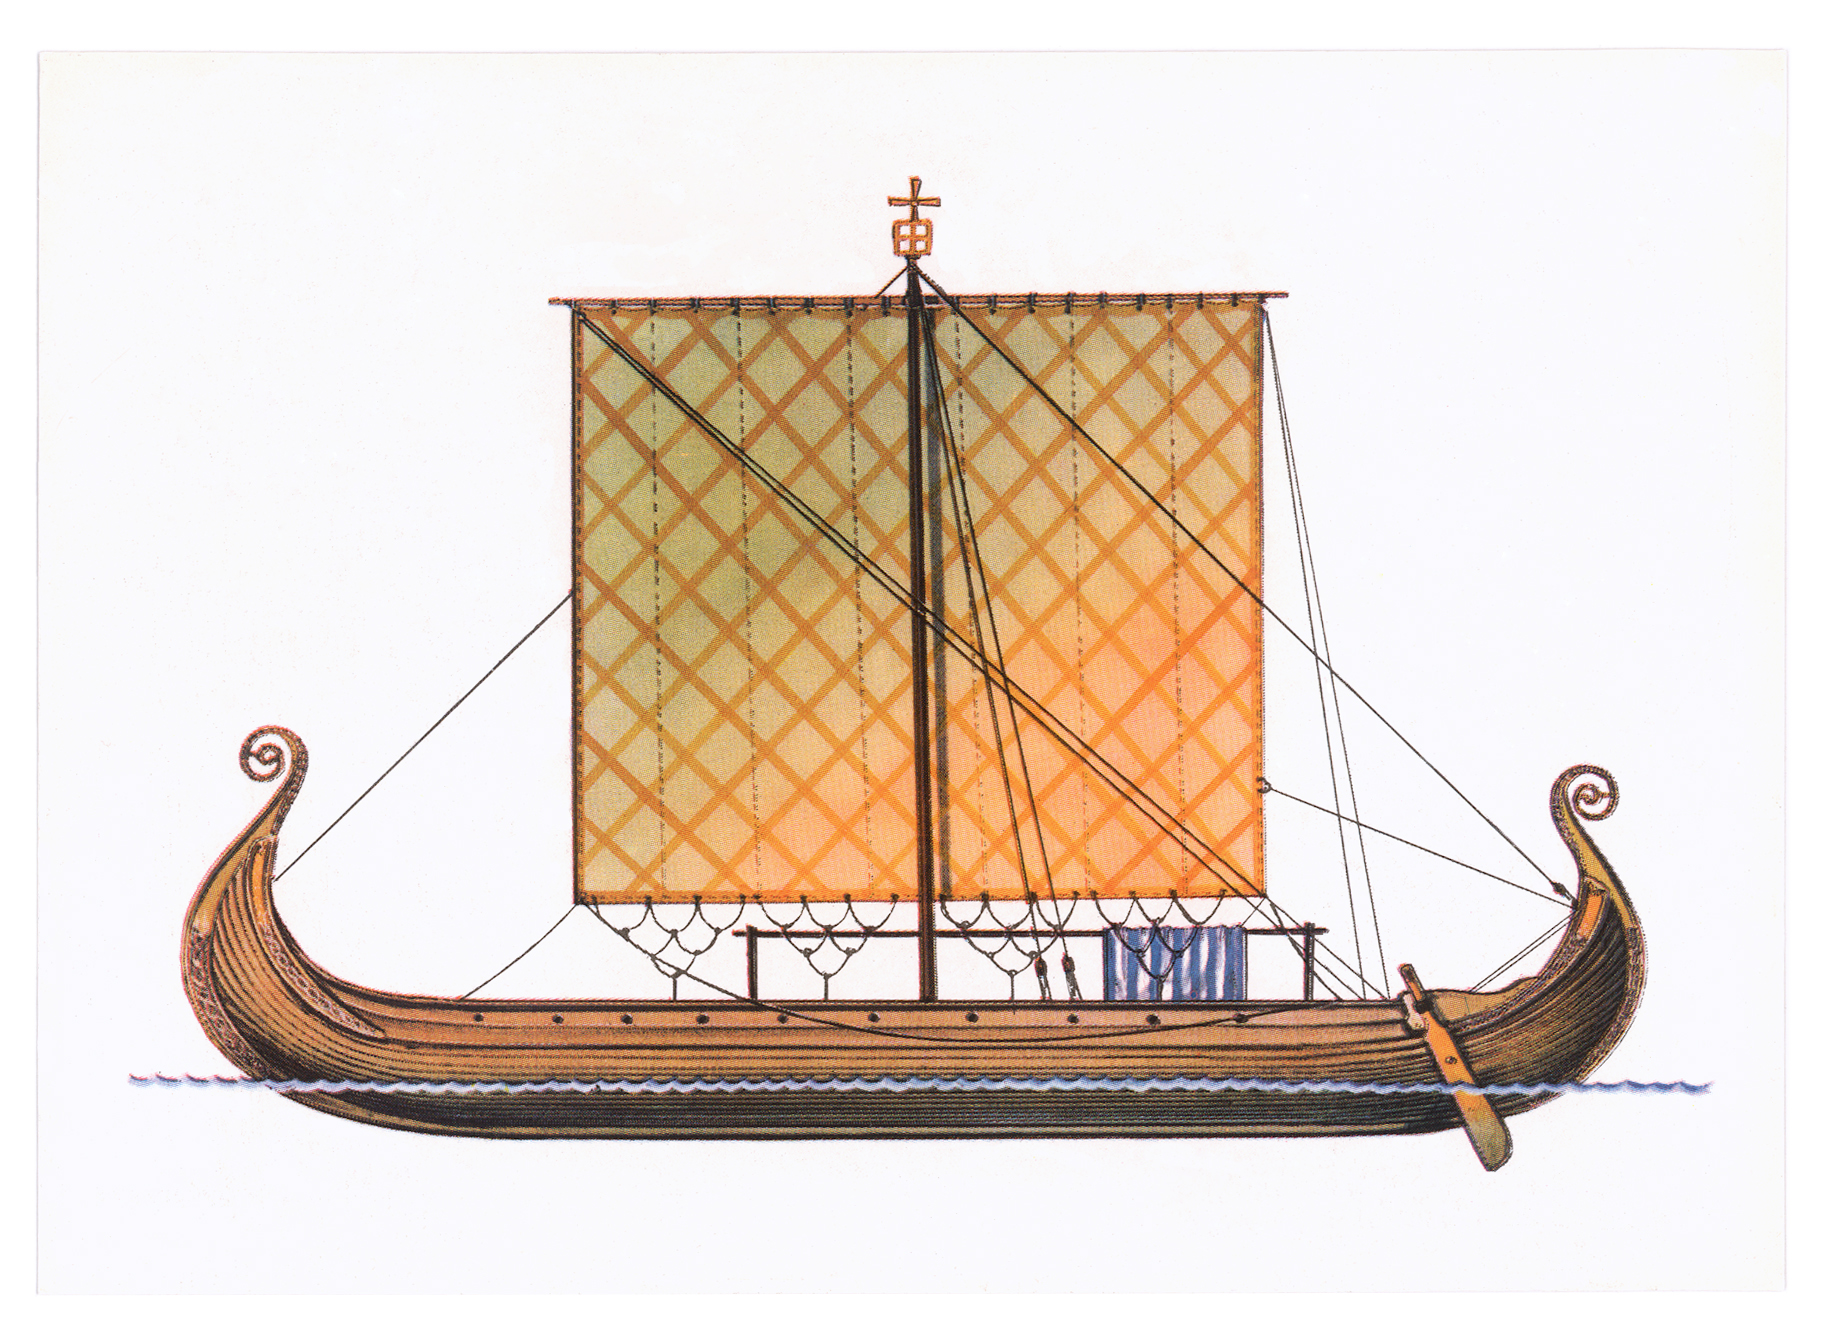 Название ладьи. Драккар норманнов. Гокштадский корабль (дракар). Ладья Драккар викингов. Драккар викингов мачта.